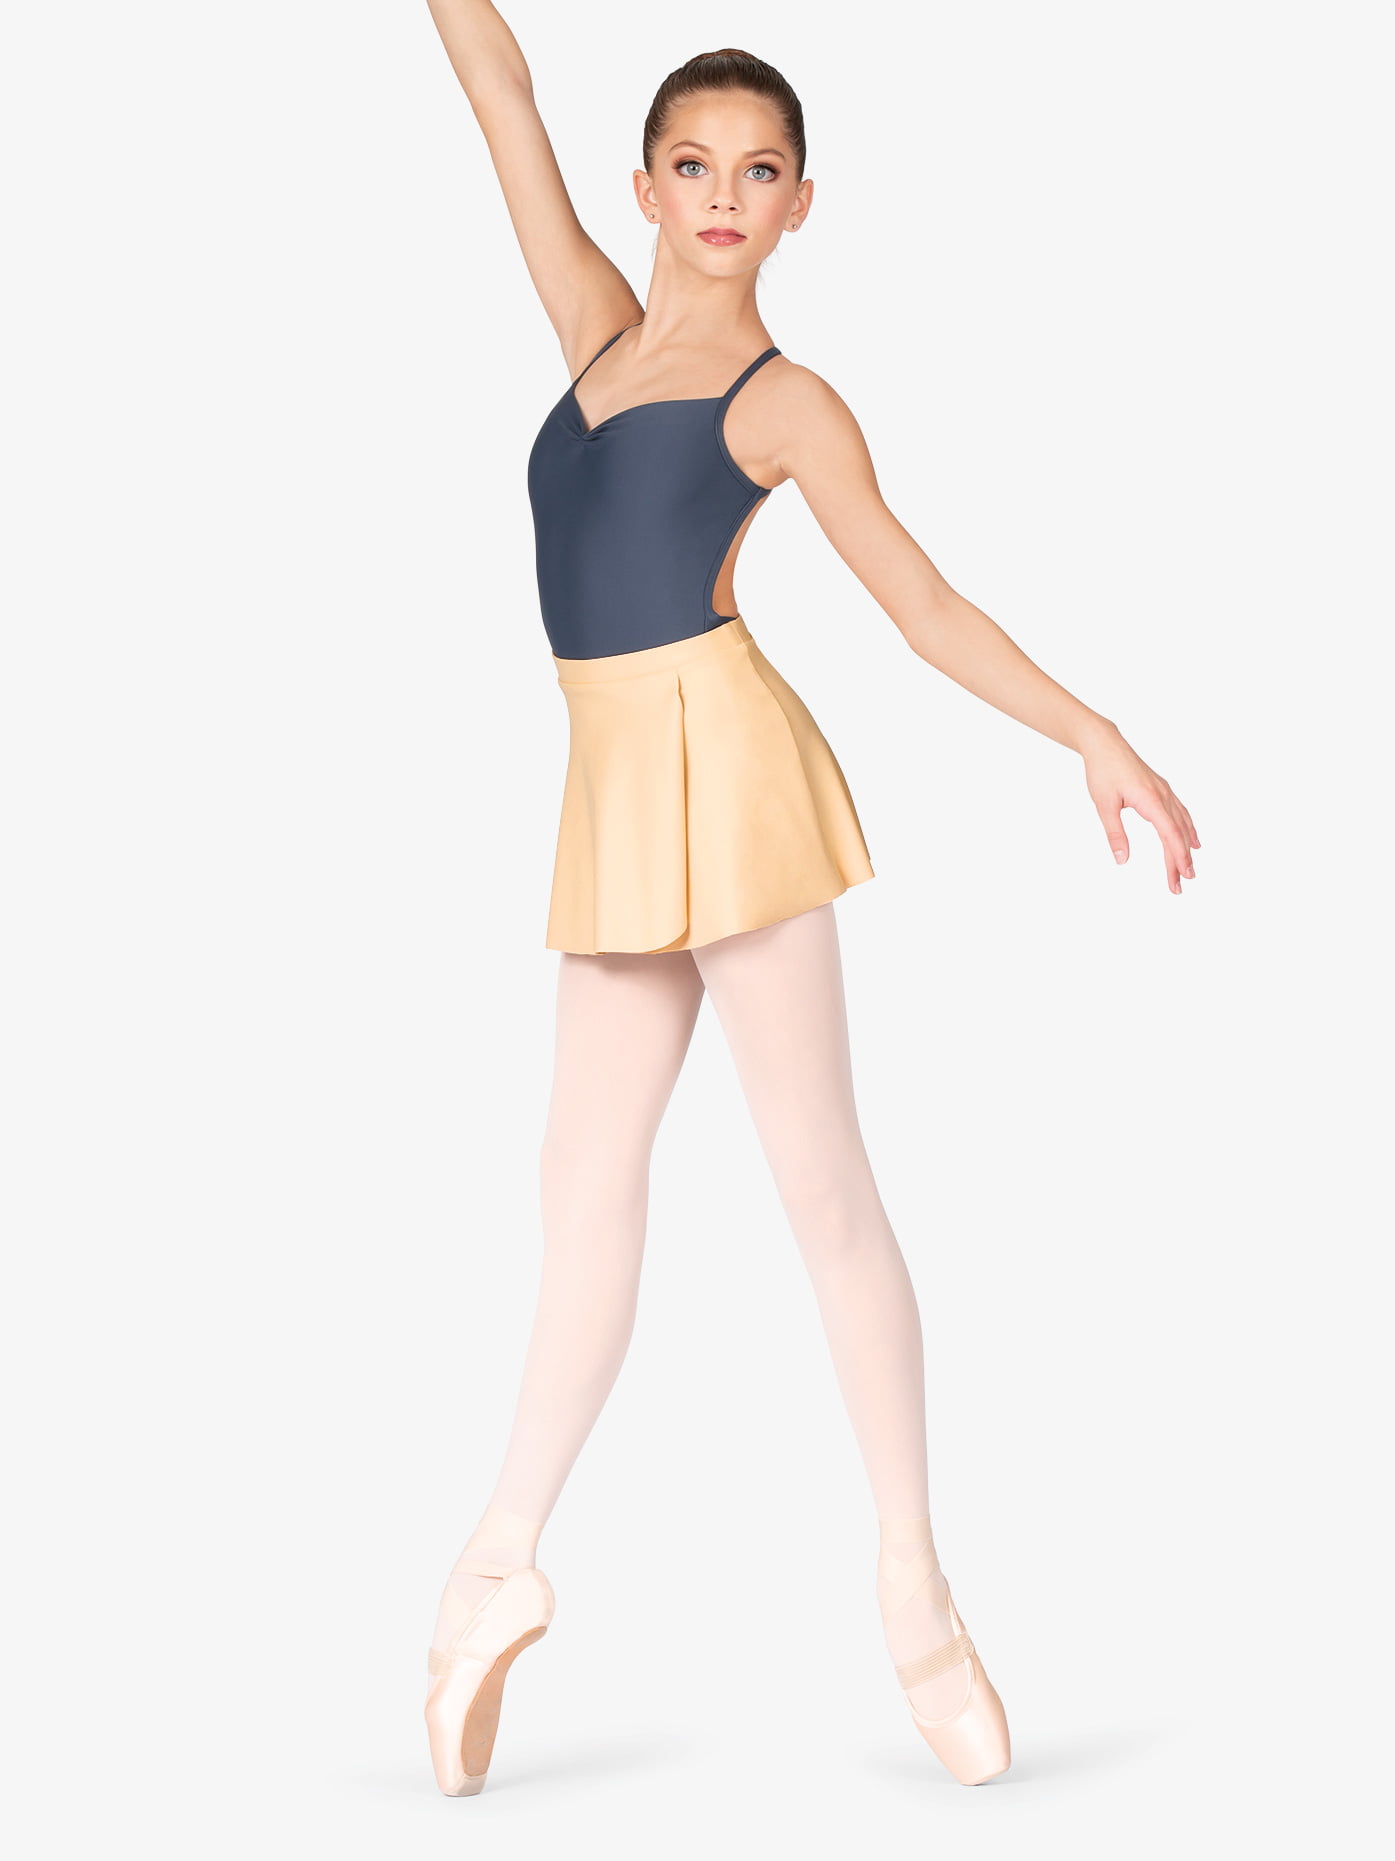 Bezioner Ballet Skirt Pull on Chiffon Dance Skirt Elastic Waist Women Girls 